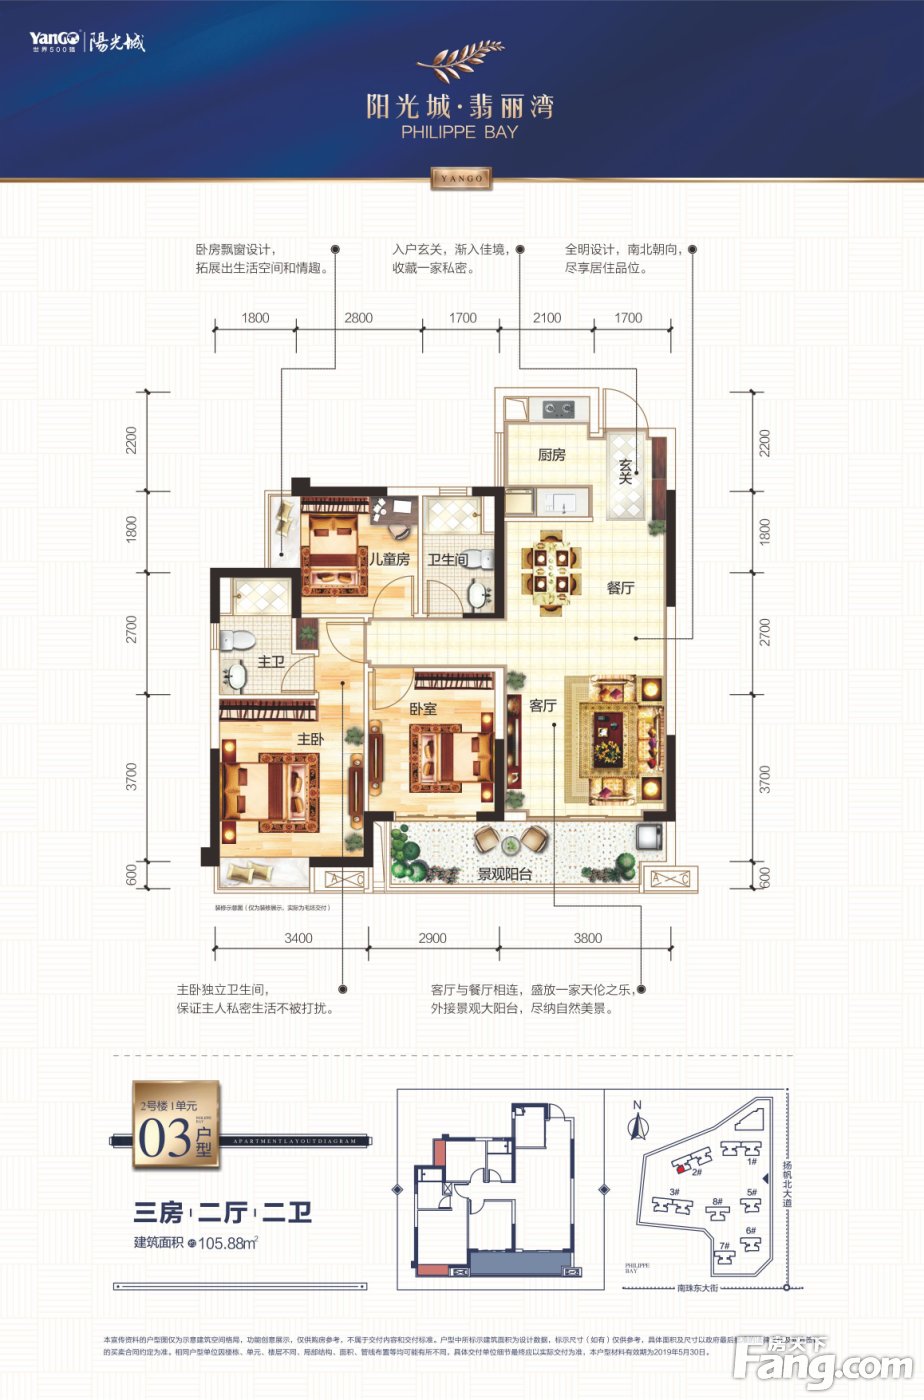 阳光城·翡丽湾新品2#楼 建面约106-128㎡双景大户